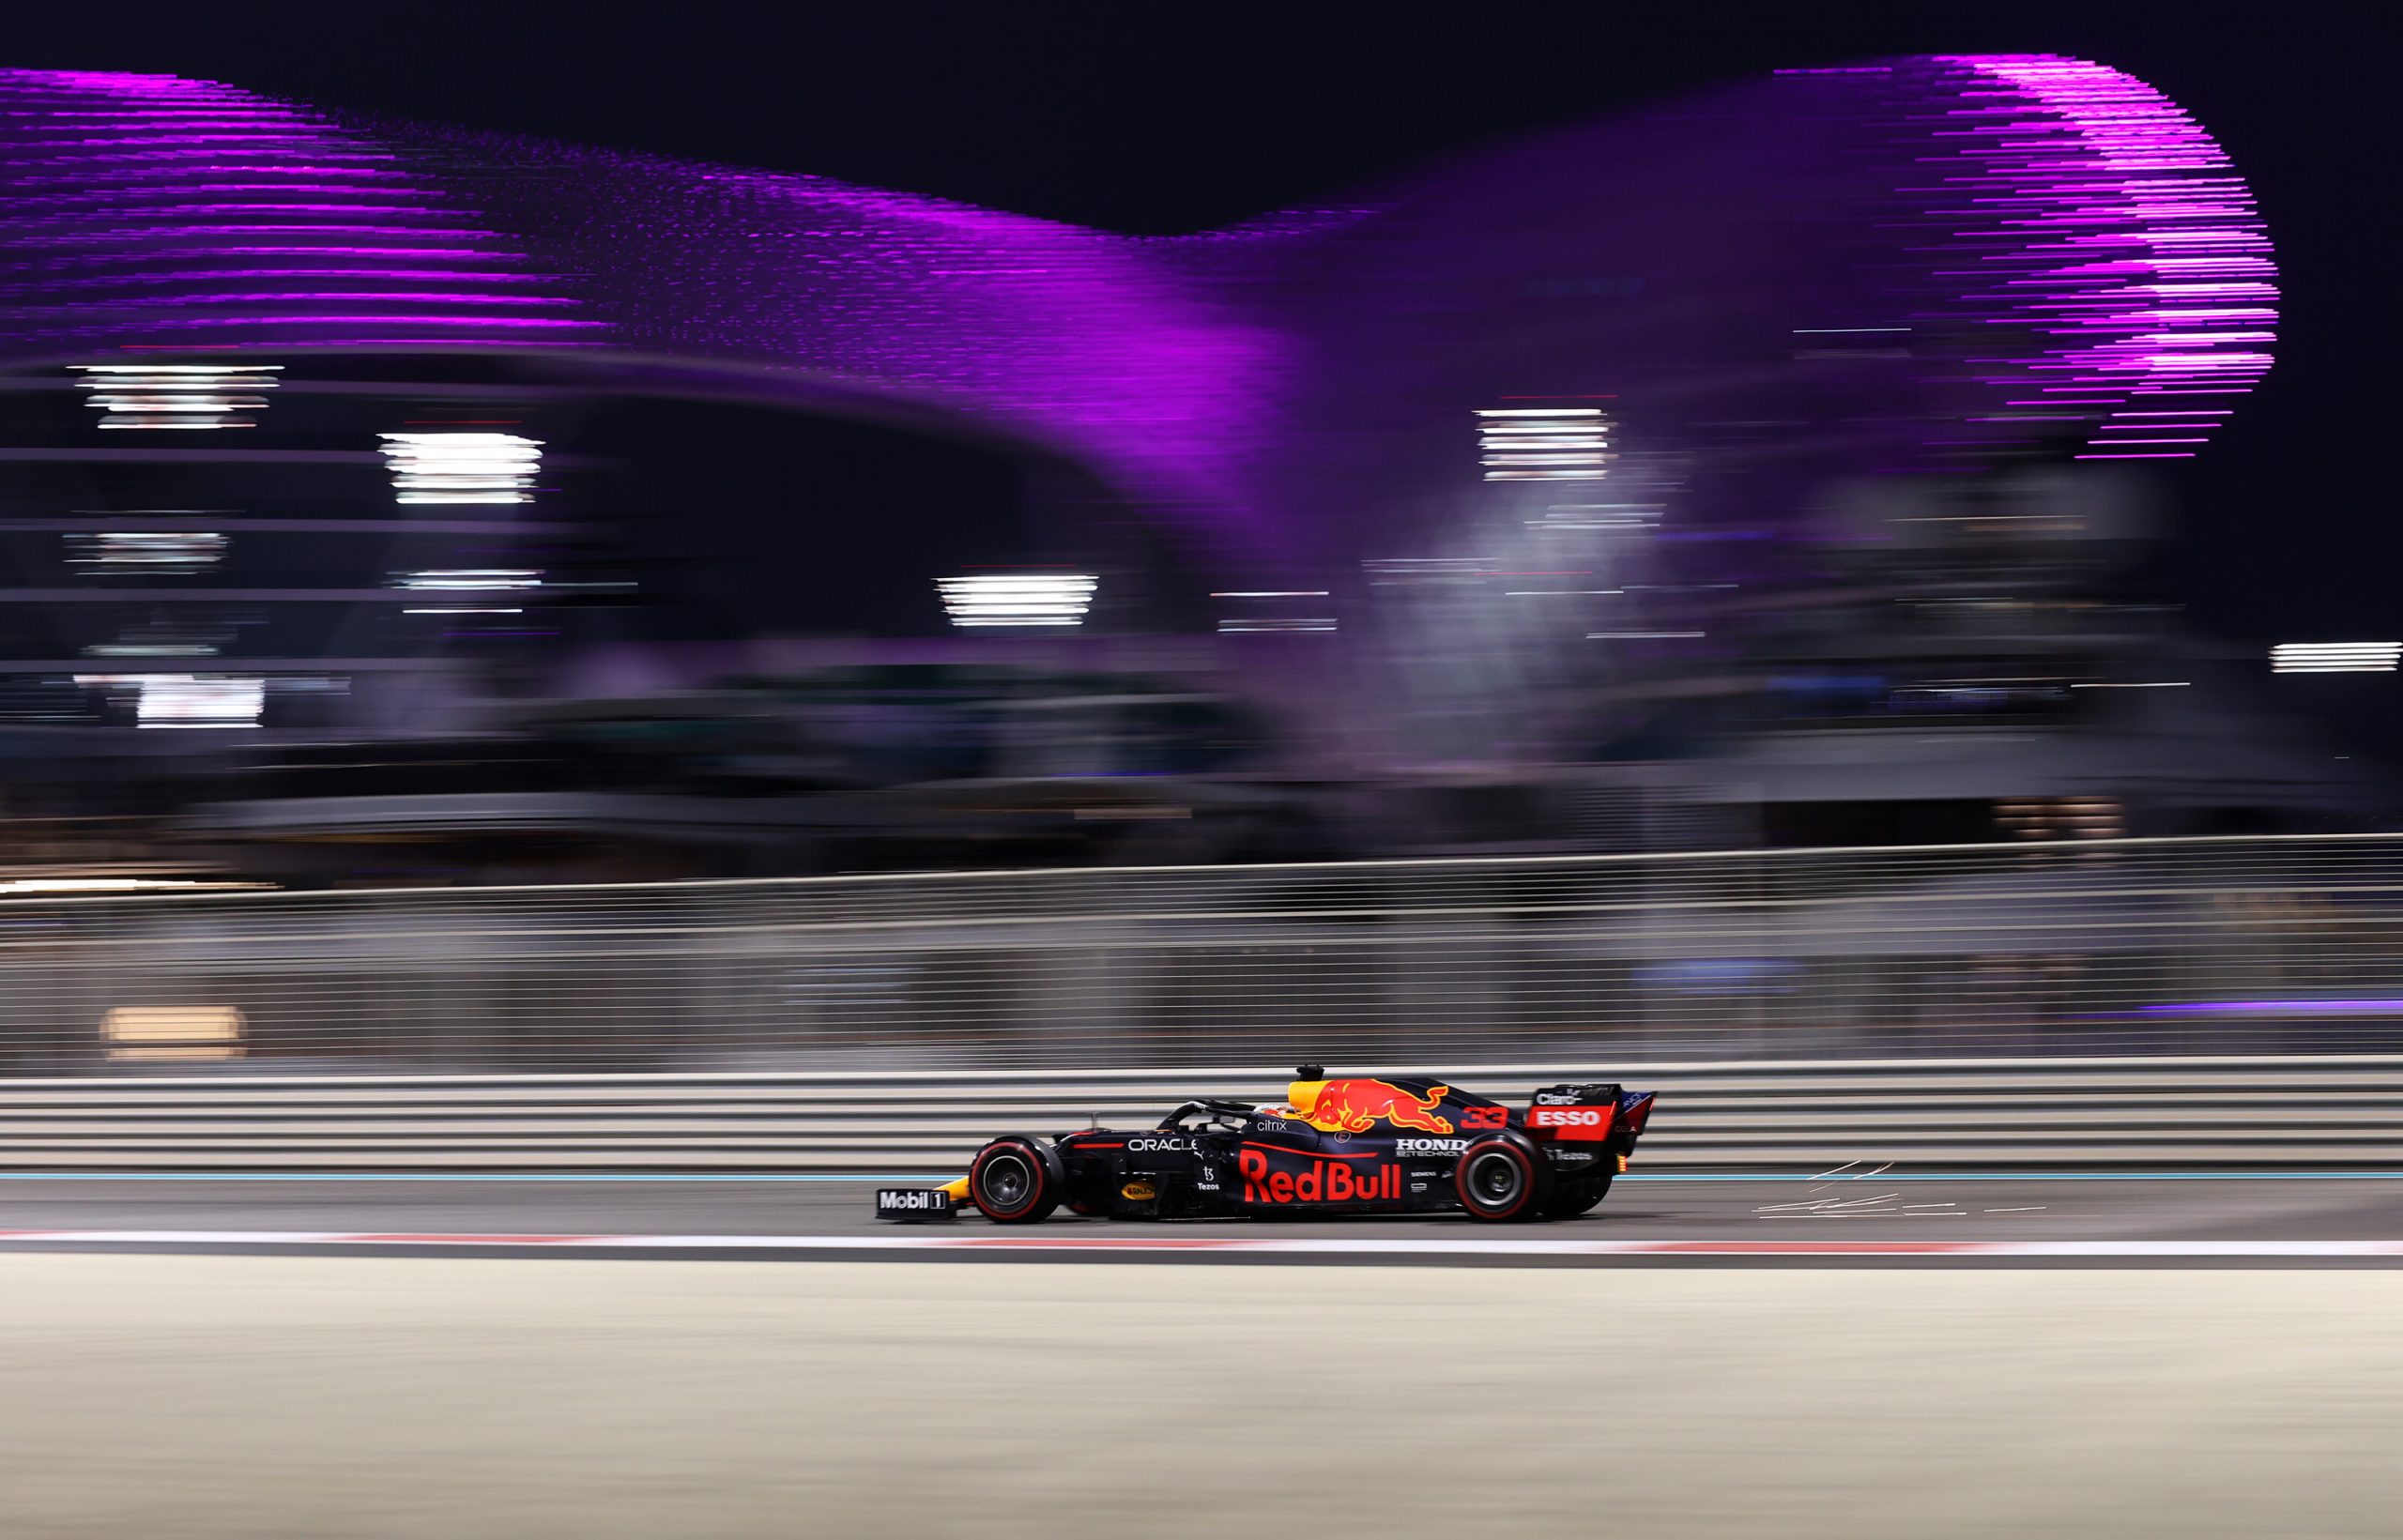 Qualifica, Gp Abu Dhabi: Verstappen pazzesco in pole, Hamilton 2°. Ferrari 5° e 7°.